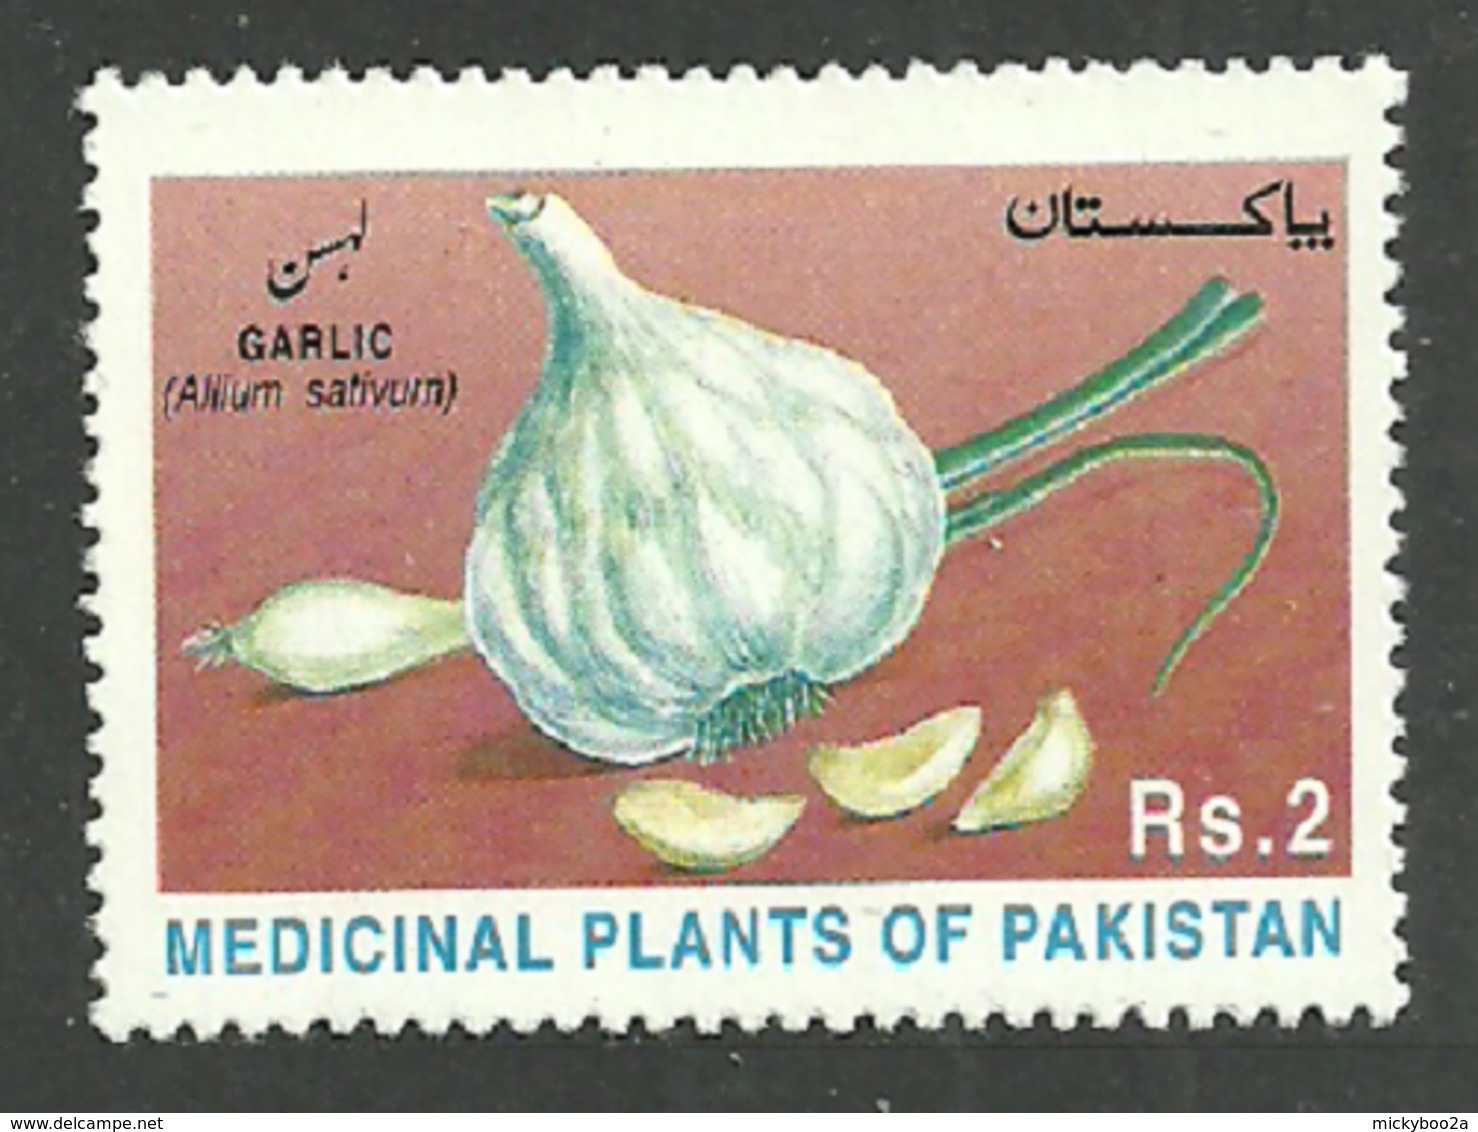 PAKISTAN 1997 MEDICINAL PLANTS GARLIC SET MNH - Pakistan